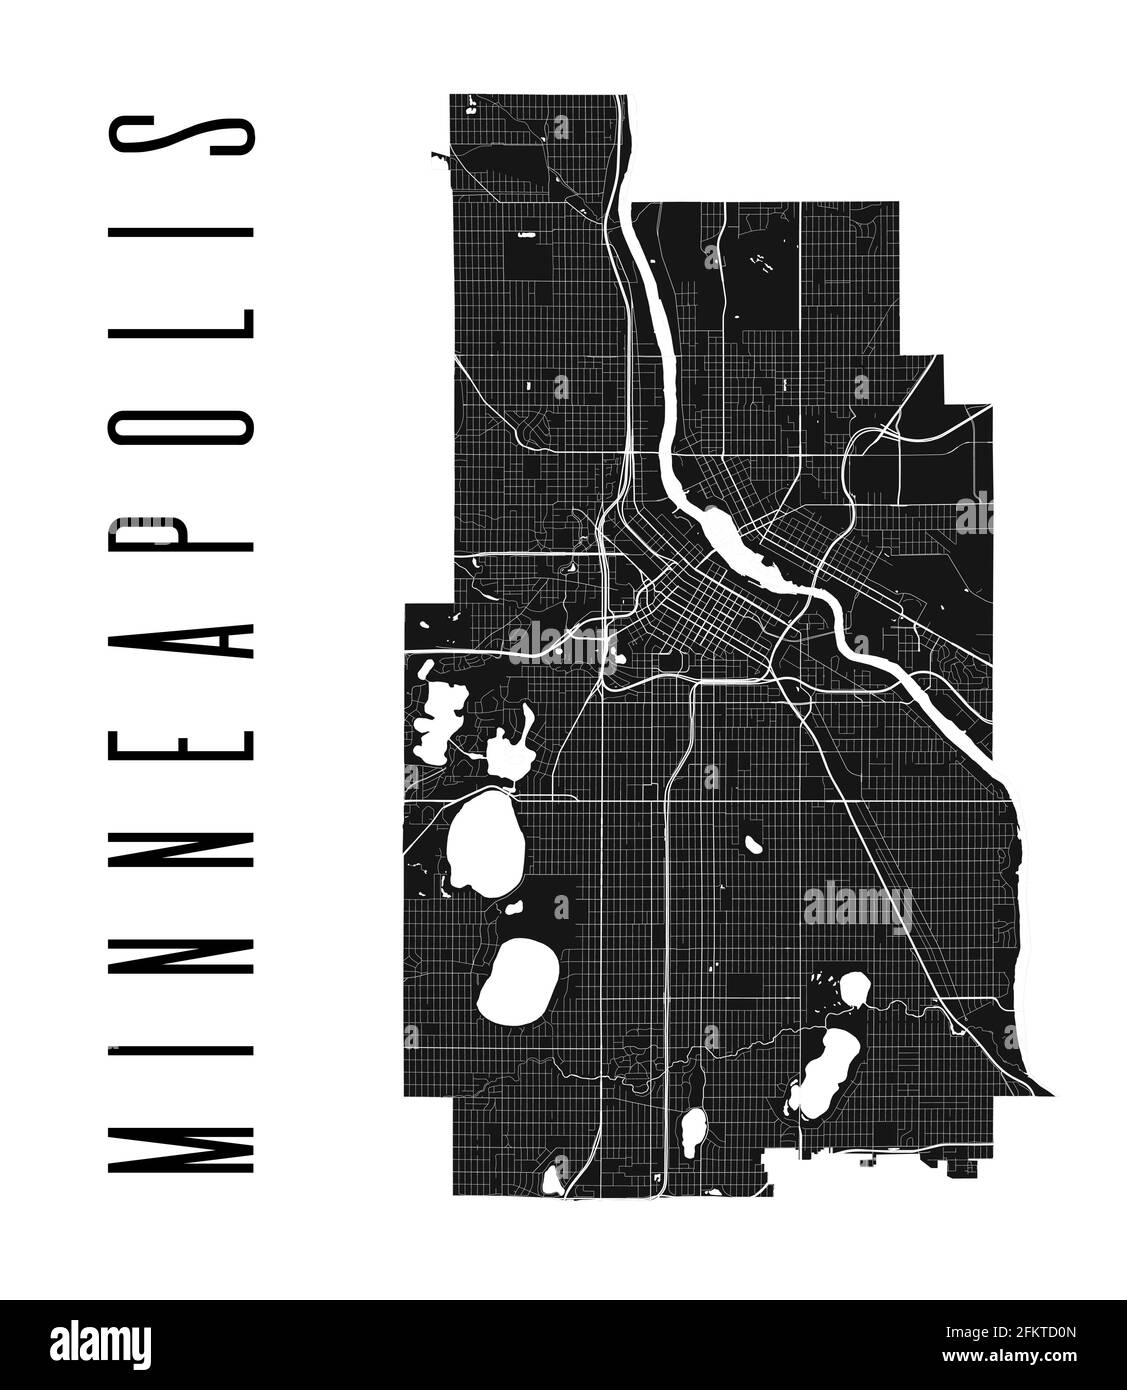 Mappa di Minneapolis. Mappa vettoriale dettagliata dell'area amministrativa della città di Minneapolis. Poster del paesaggio urbano vista aria metropolitana. Terra nera con strade bianche, Illustrazione Vettoriale